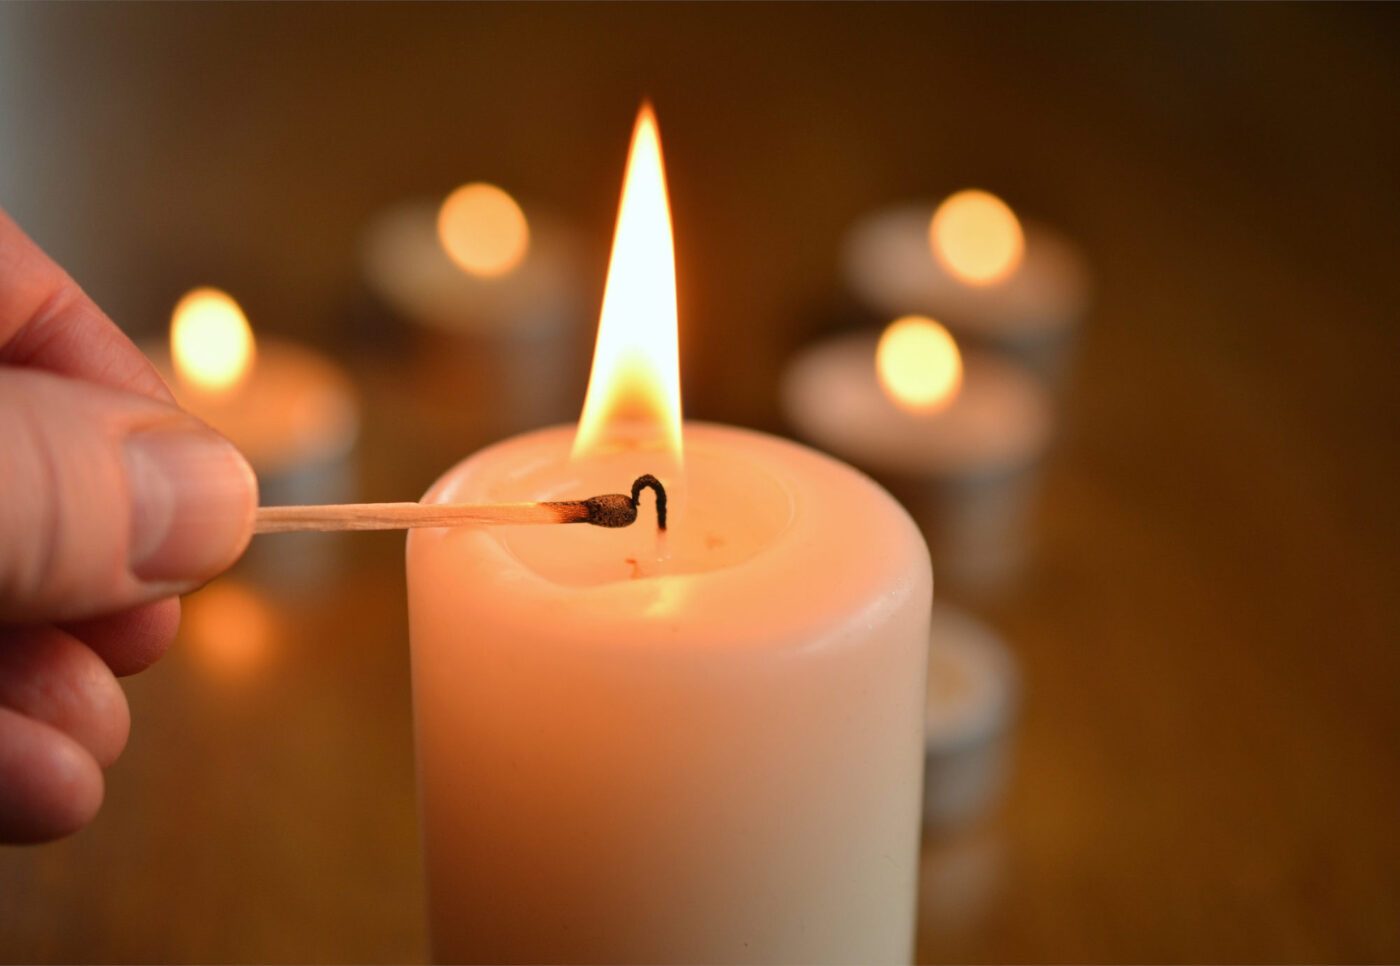 Kerzen stehen in der Advent- und Weihnachtszeit symbolisch für das Licht, das durch die Menschwerdung Gottes die Welt erhellt. (Foto: Pixabay)